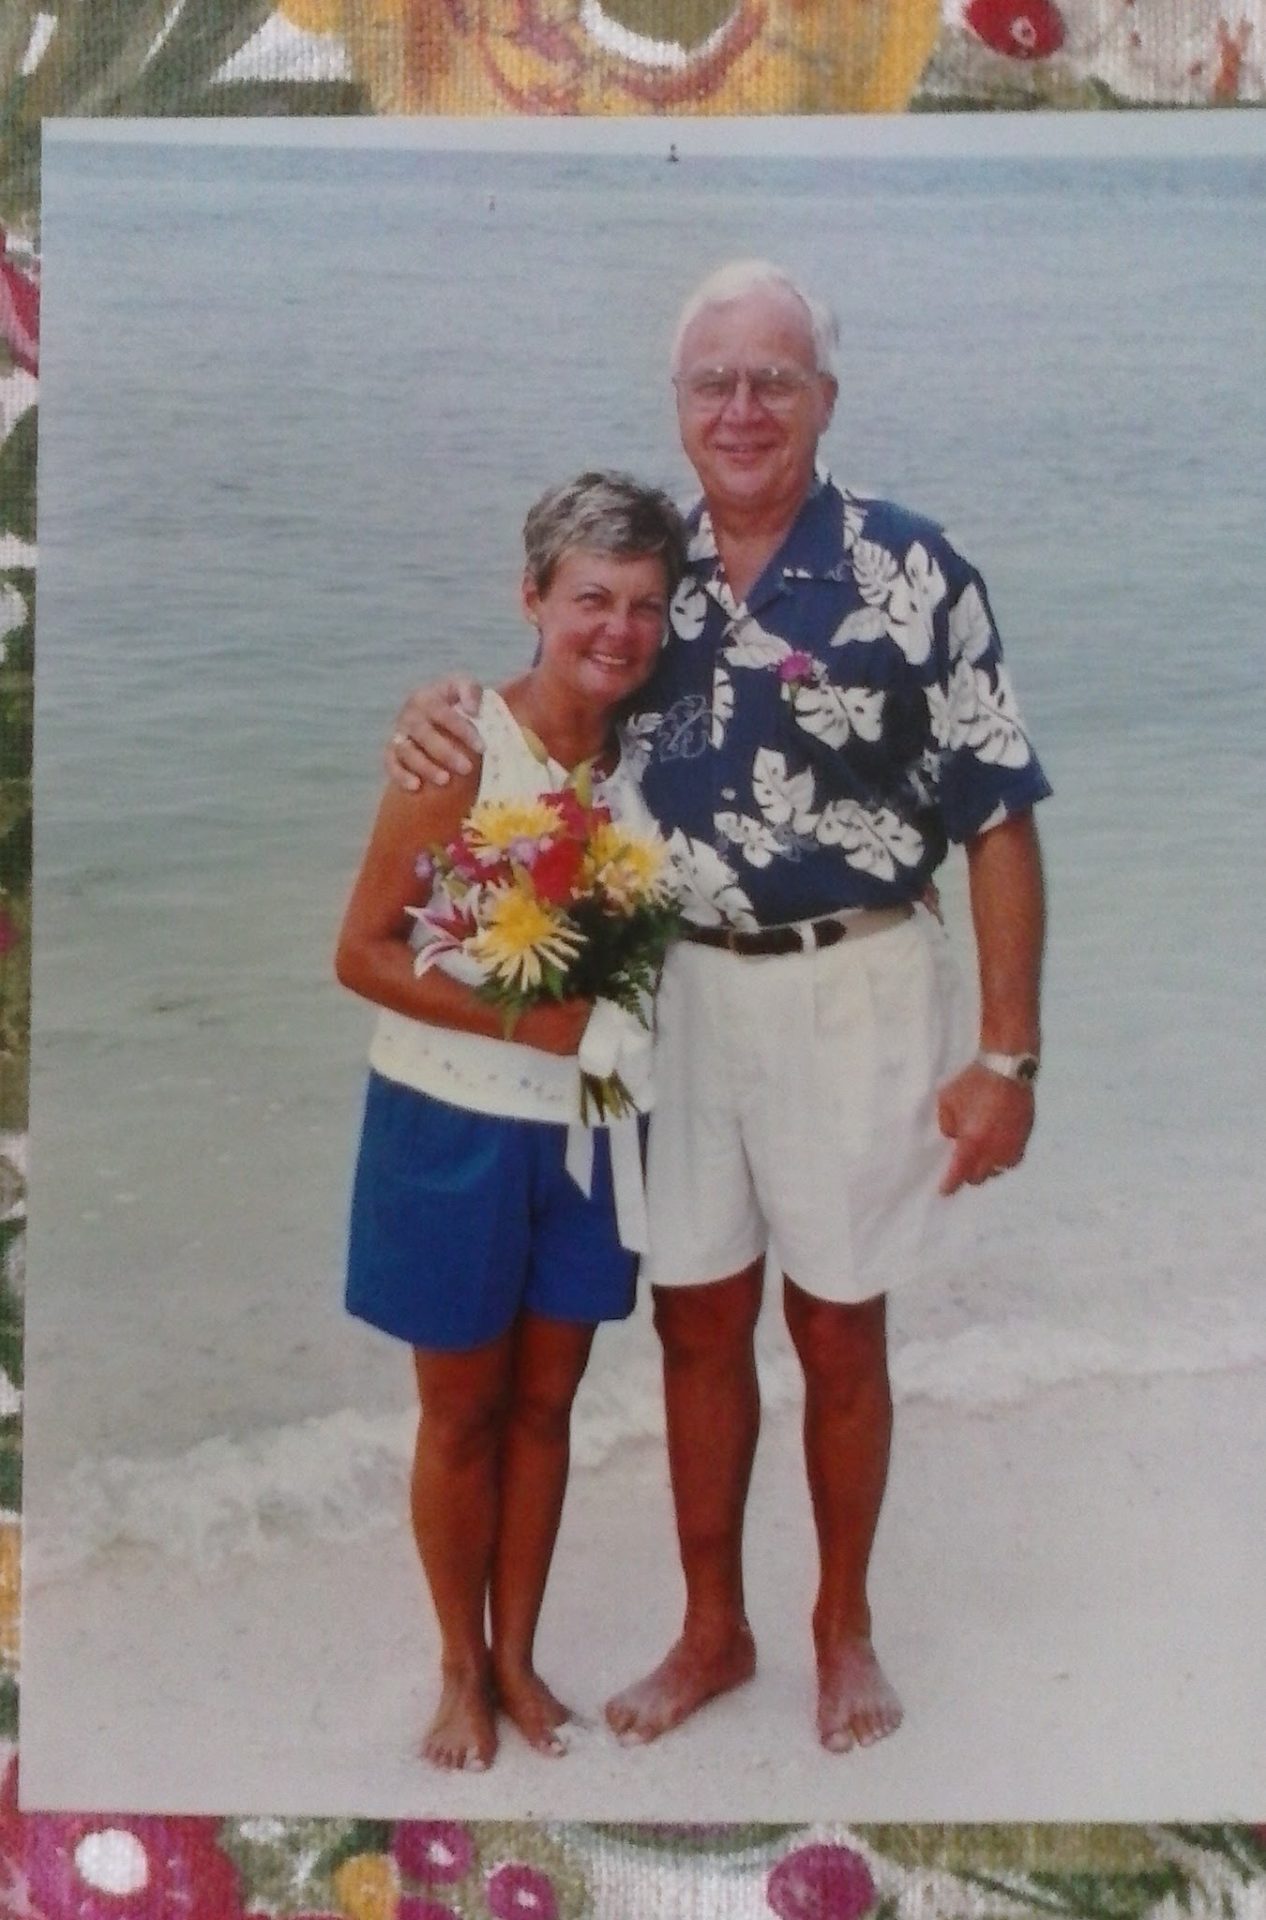 Meemaw & Pop Bill's Wedding in Key West, Florida<br />
June, 2000